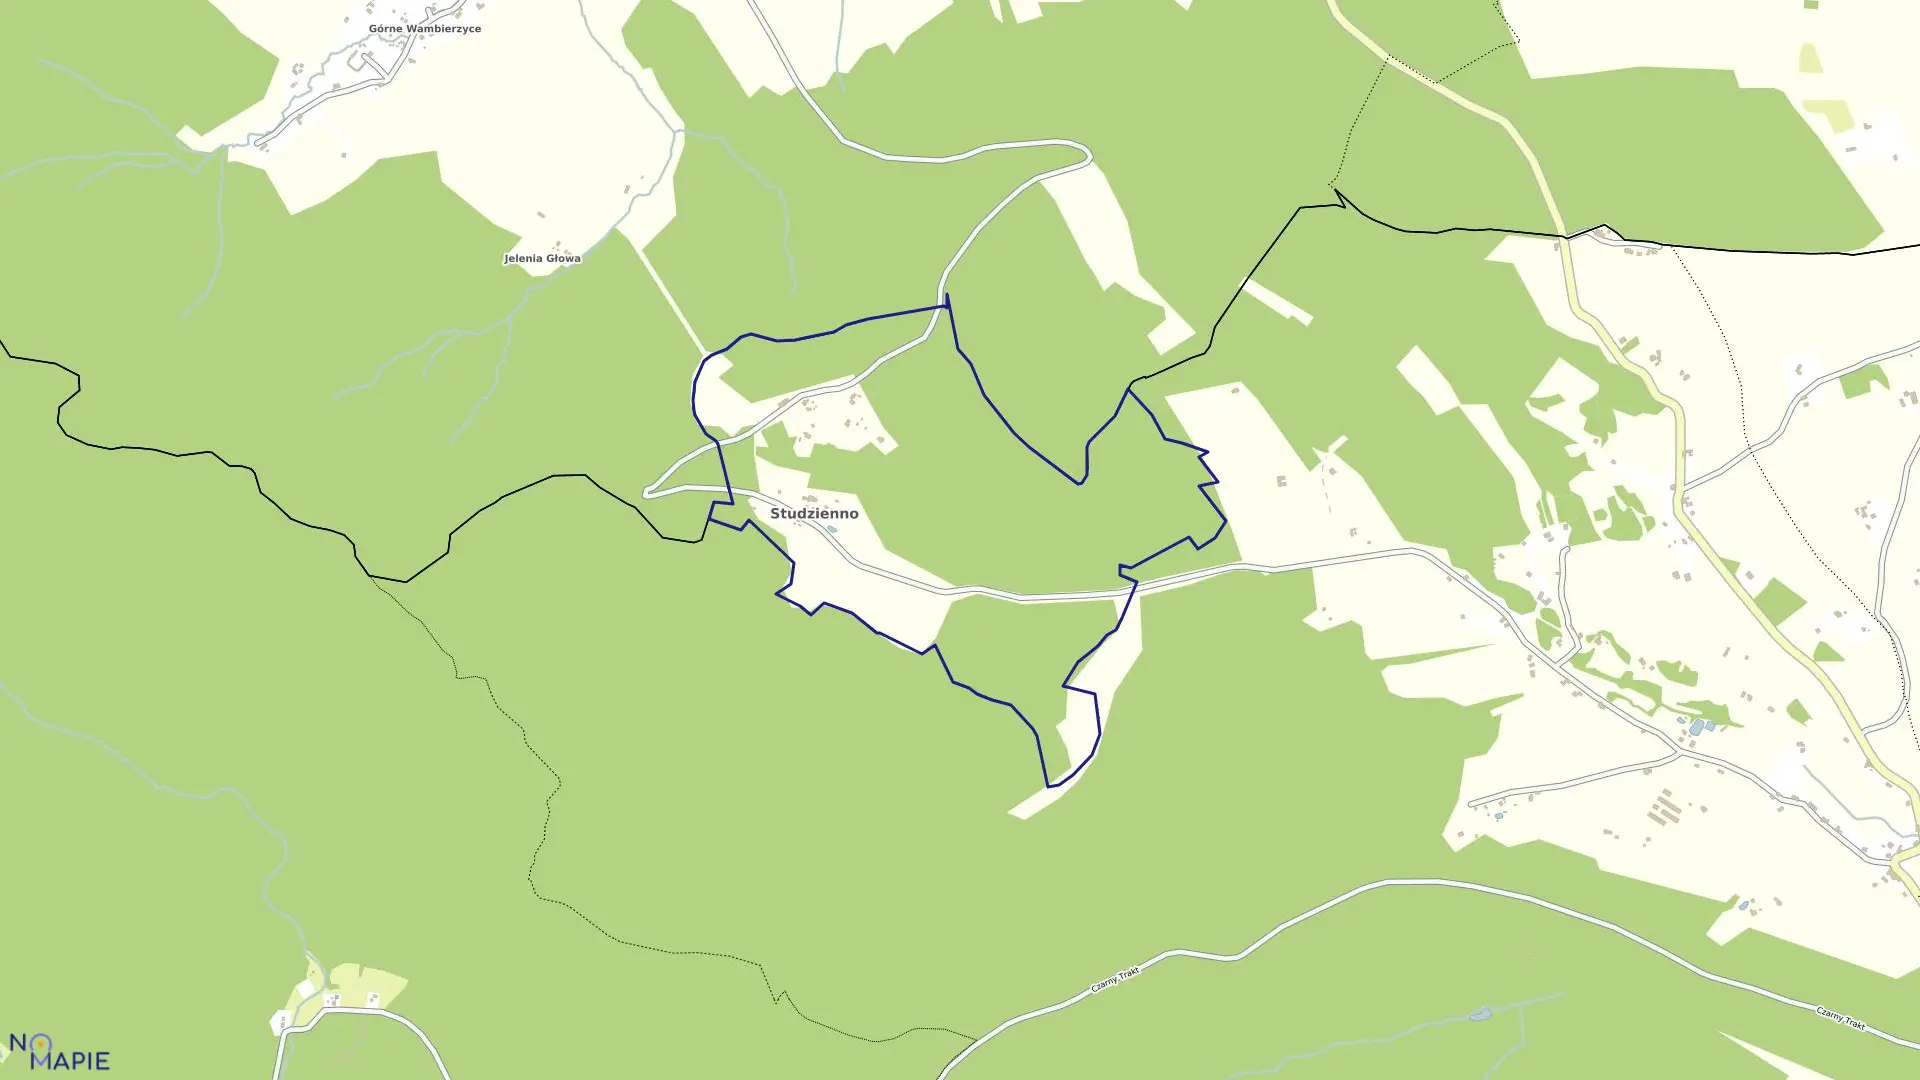 Mapa obrębu Studzienno w gminie Szczytna